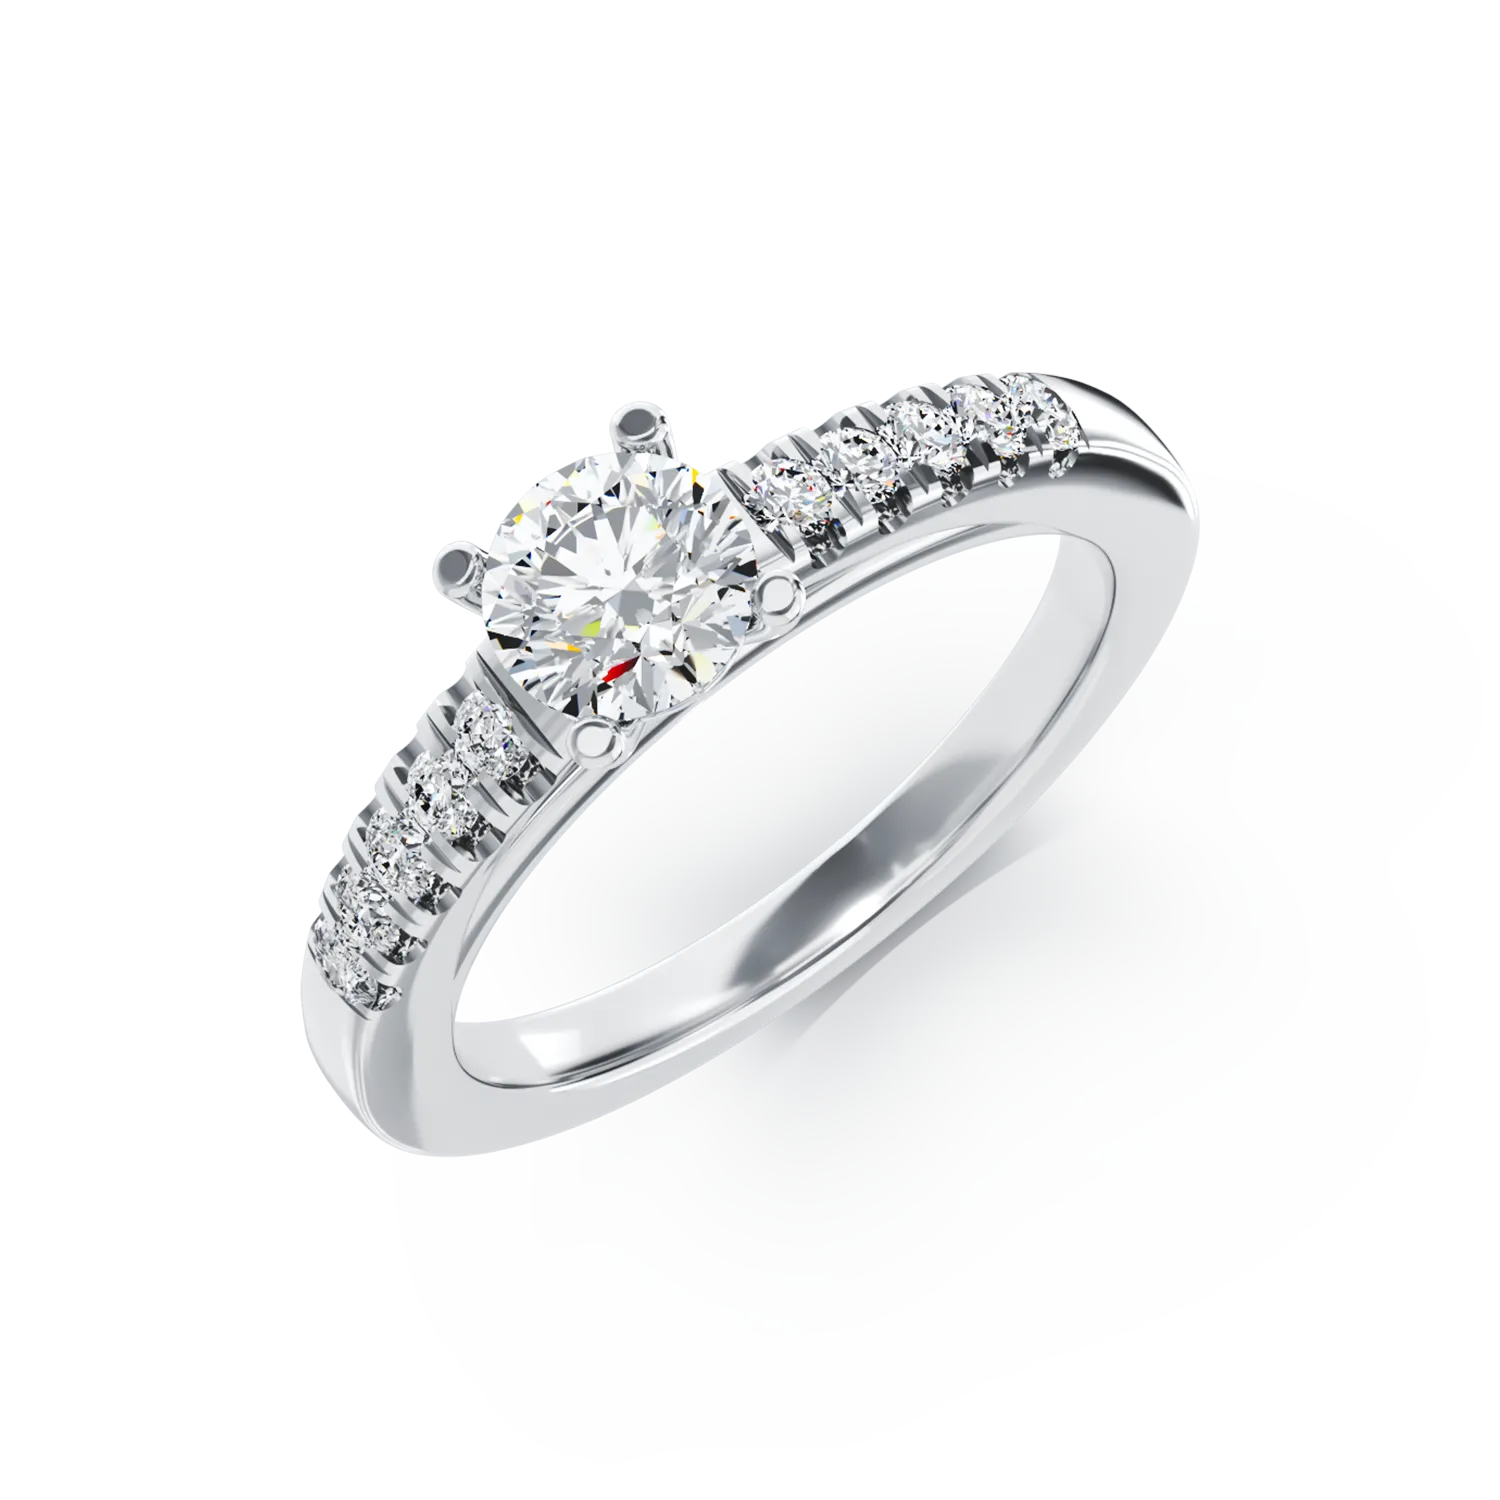 Eljegyzési gyűrű 18K-os fehér aranyból 0,5ct gyémánttal és 0,15ct gyémántokkal. Gramm: 3,45